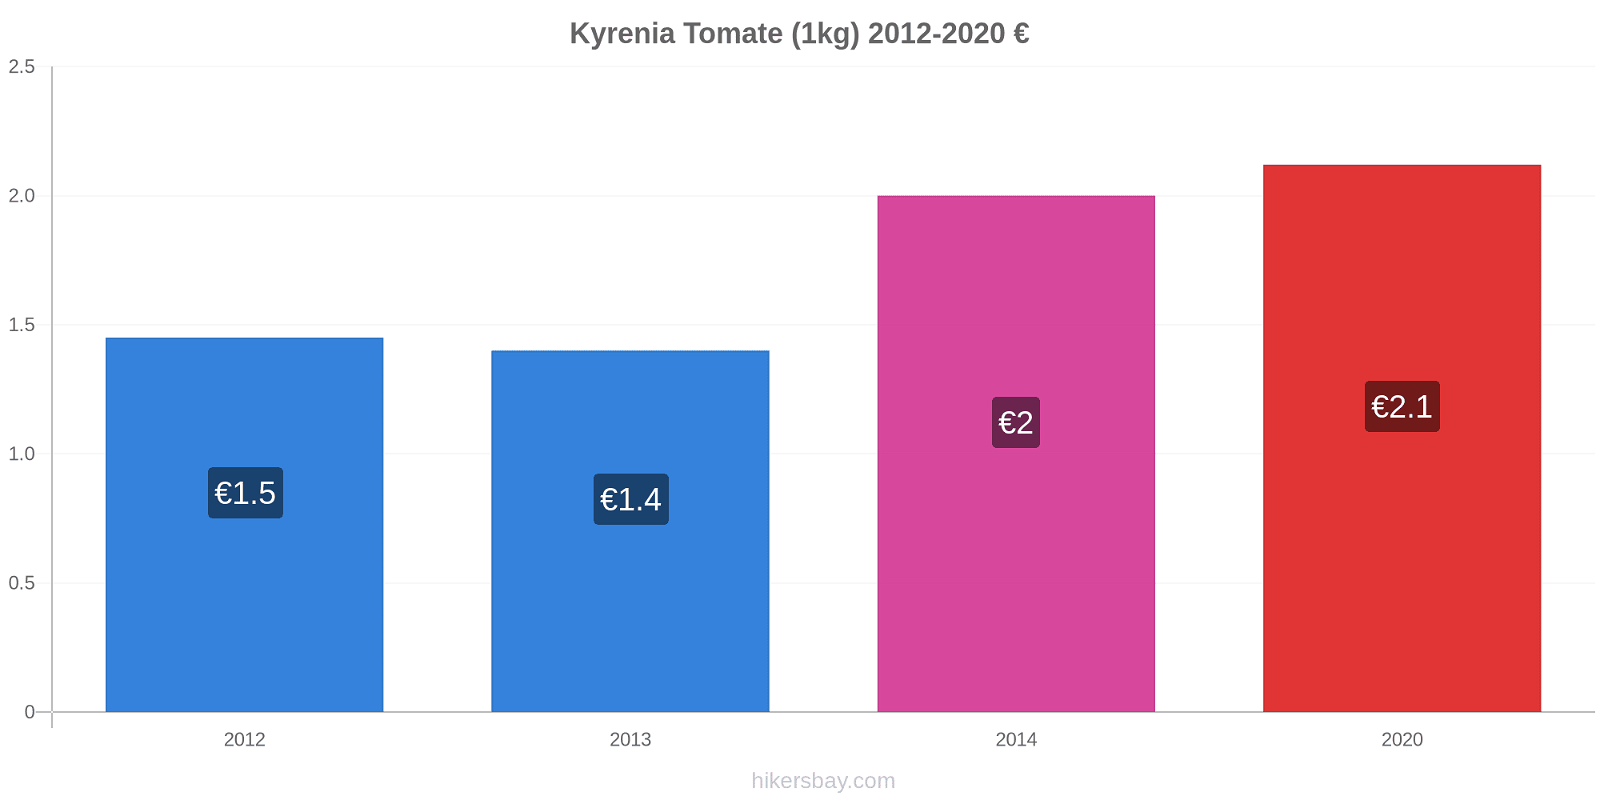 Kyrenia cambios de precios Tomate (1kg) hikersbay.com